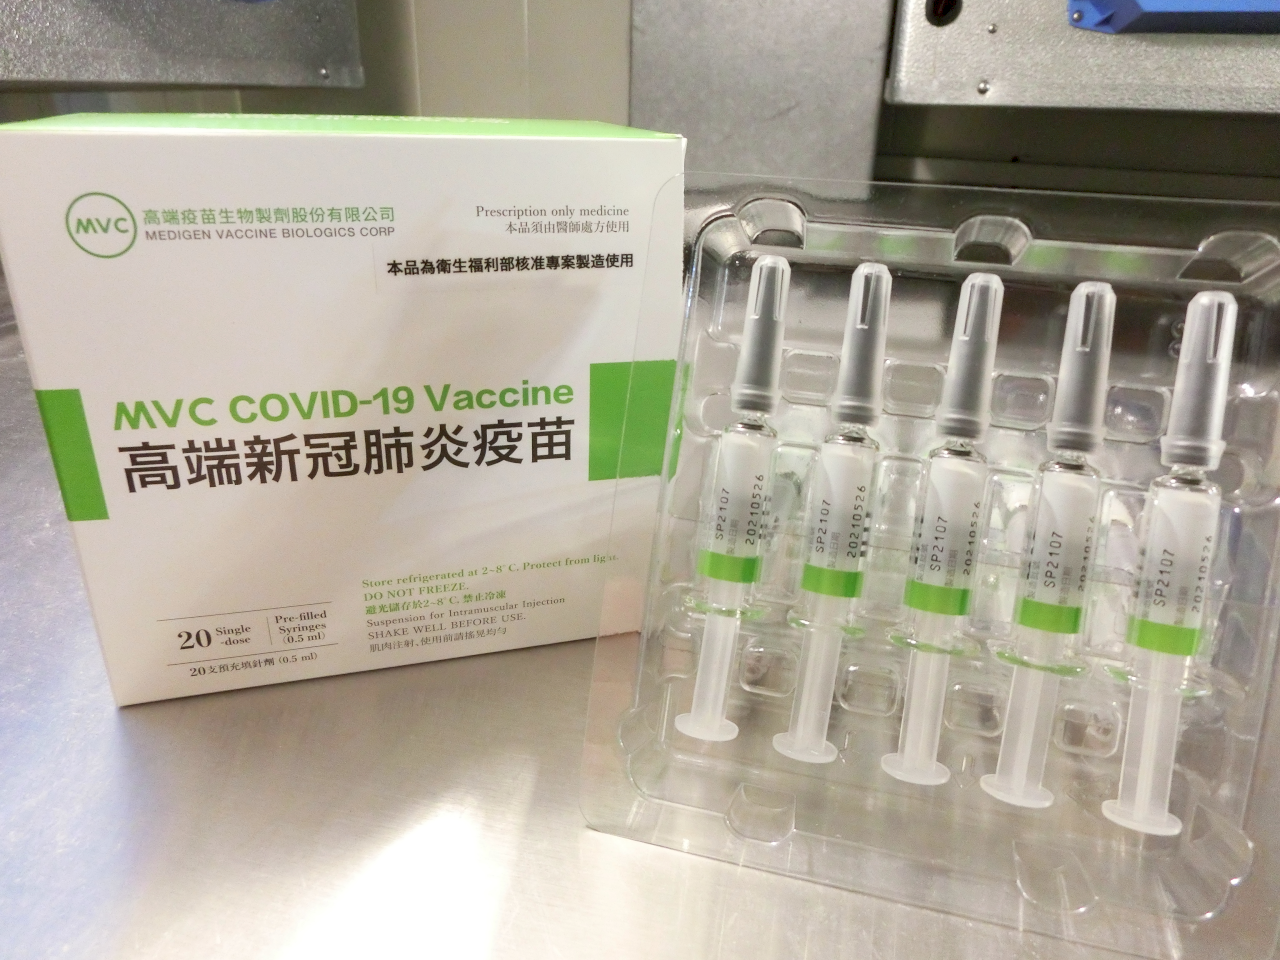 連加恩感性憶過往馬利護士學生願望 現用高端疫苗實現幫助窮國承諾